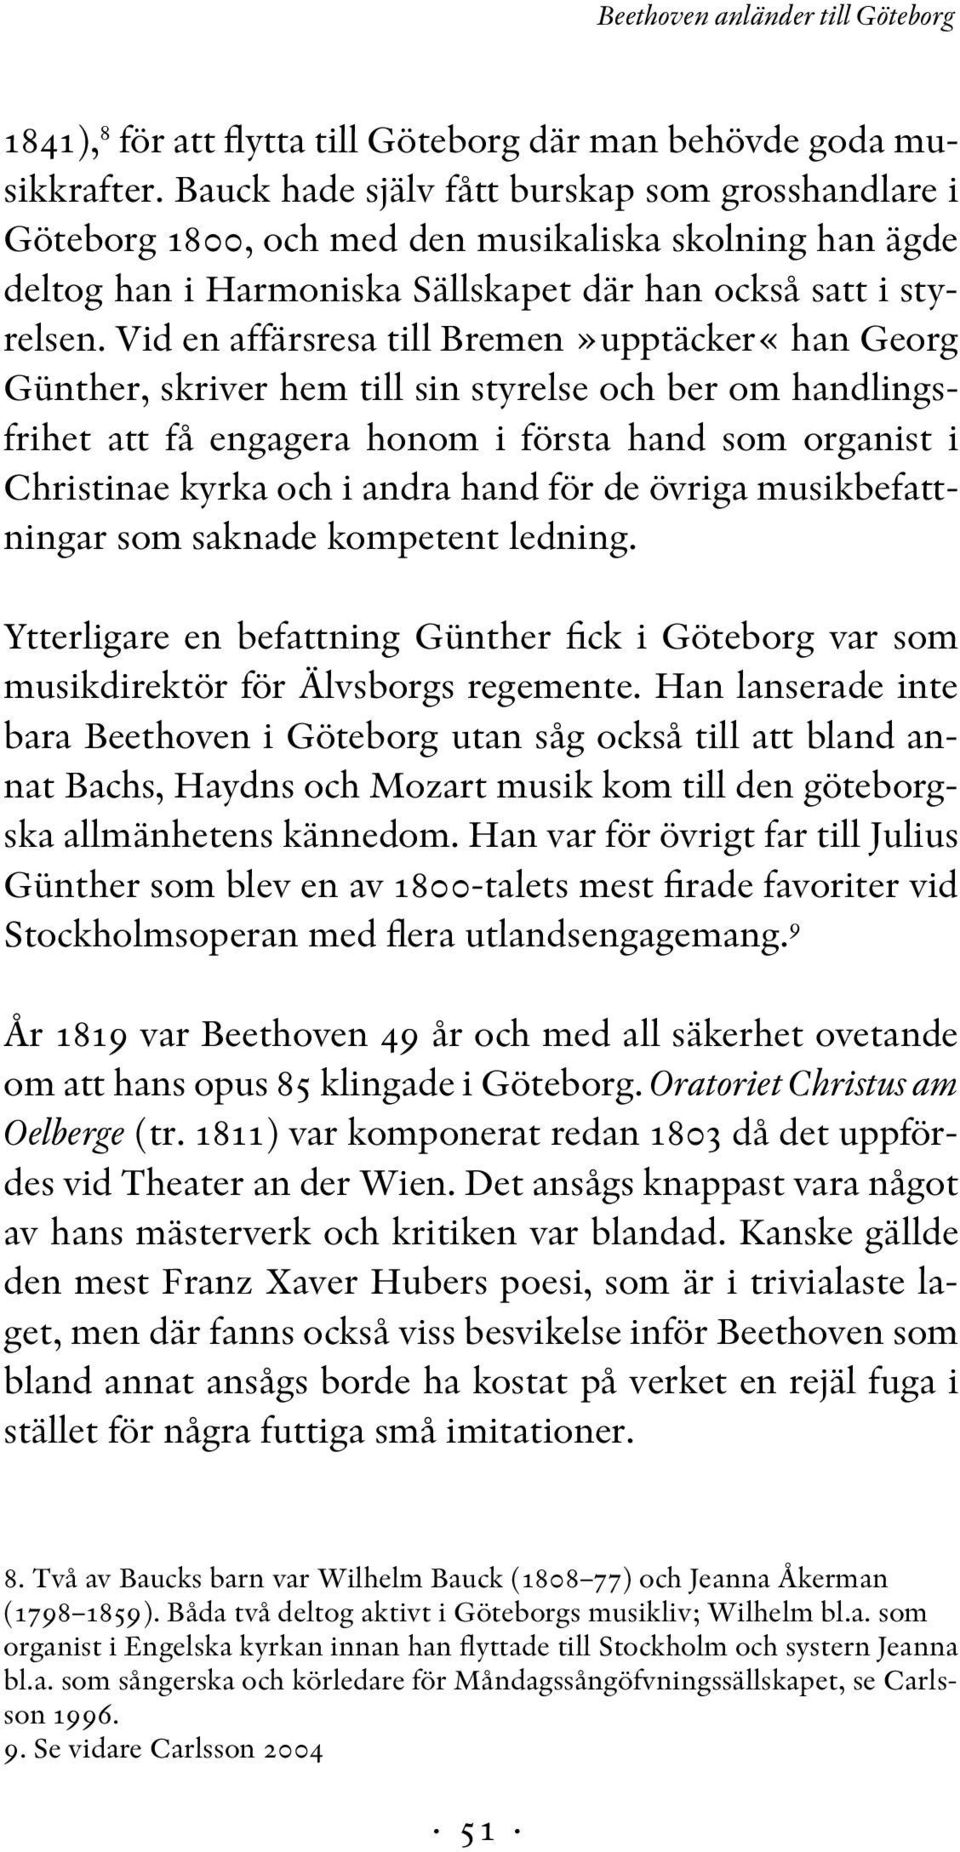 Vid en affärsresa till Bremen»upptäcker«han Georg Günther, skriver hem till sin styrelse och ber om handlingsfrihet att få engagera honom i första hand som organist i Christinae kyrka och i andra